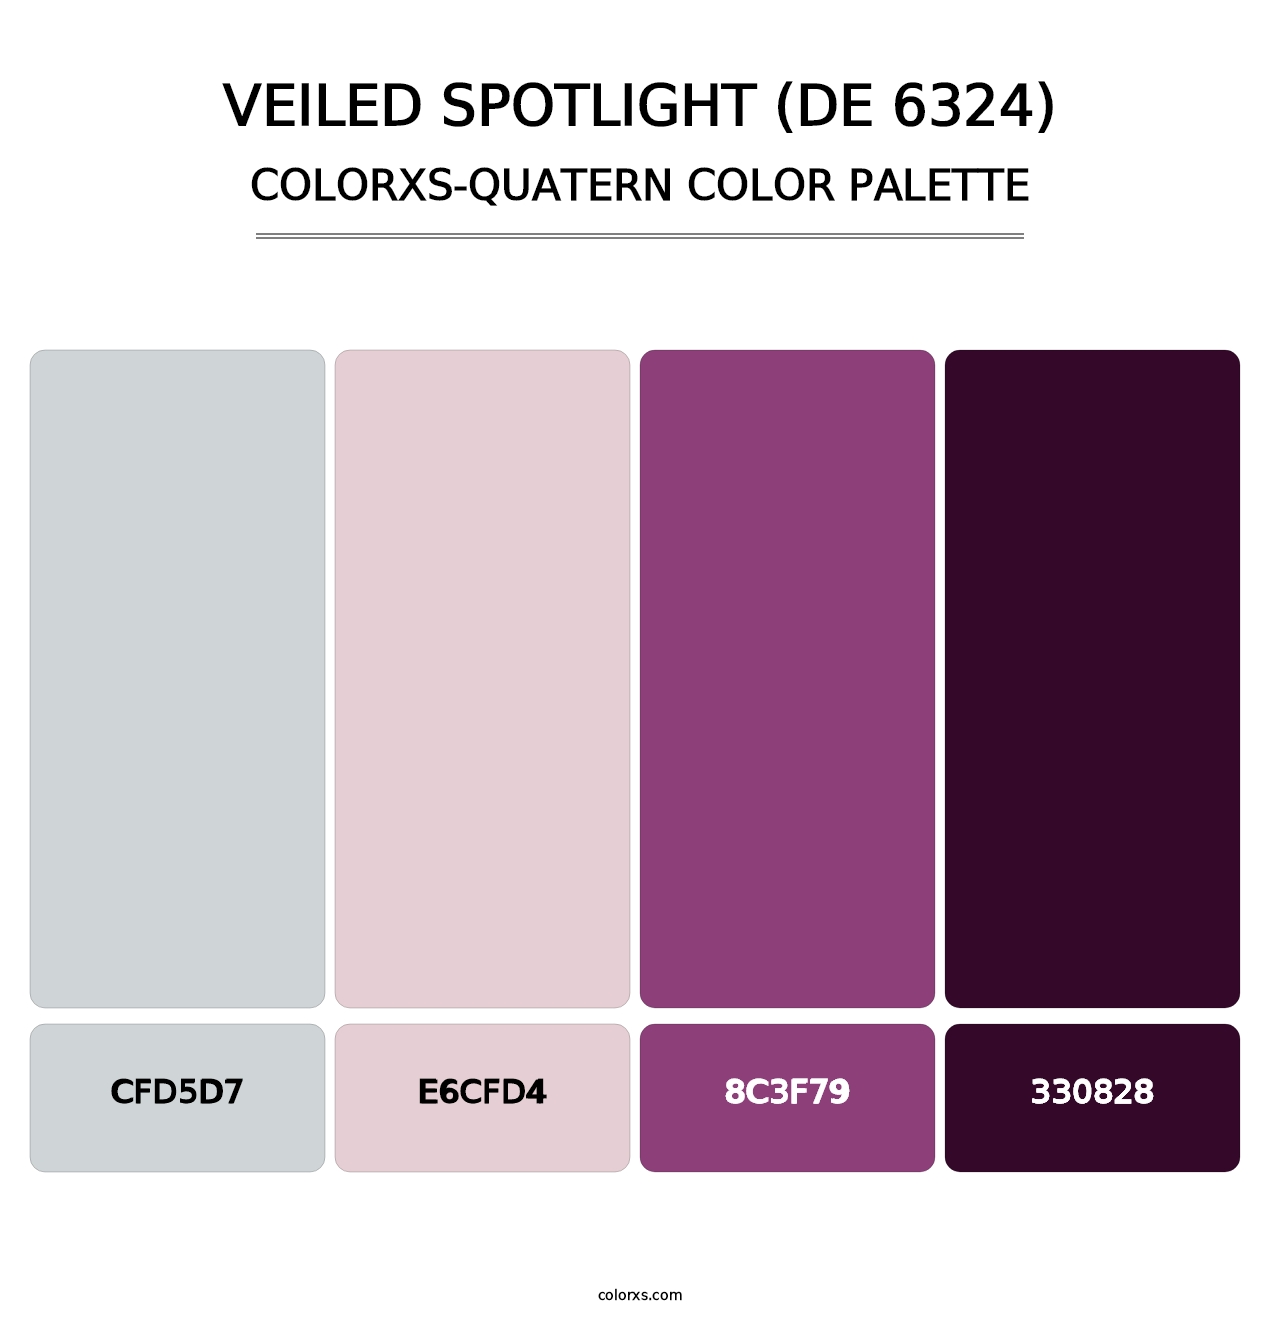 Veiled Spotlight (DE 6324) - Colorxs Quatern Palette